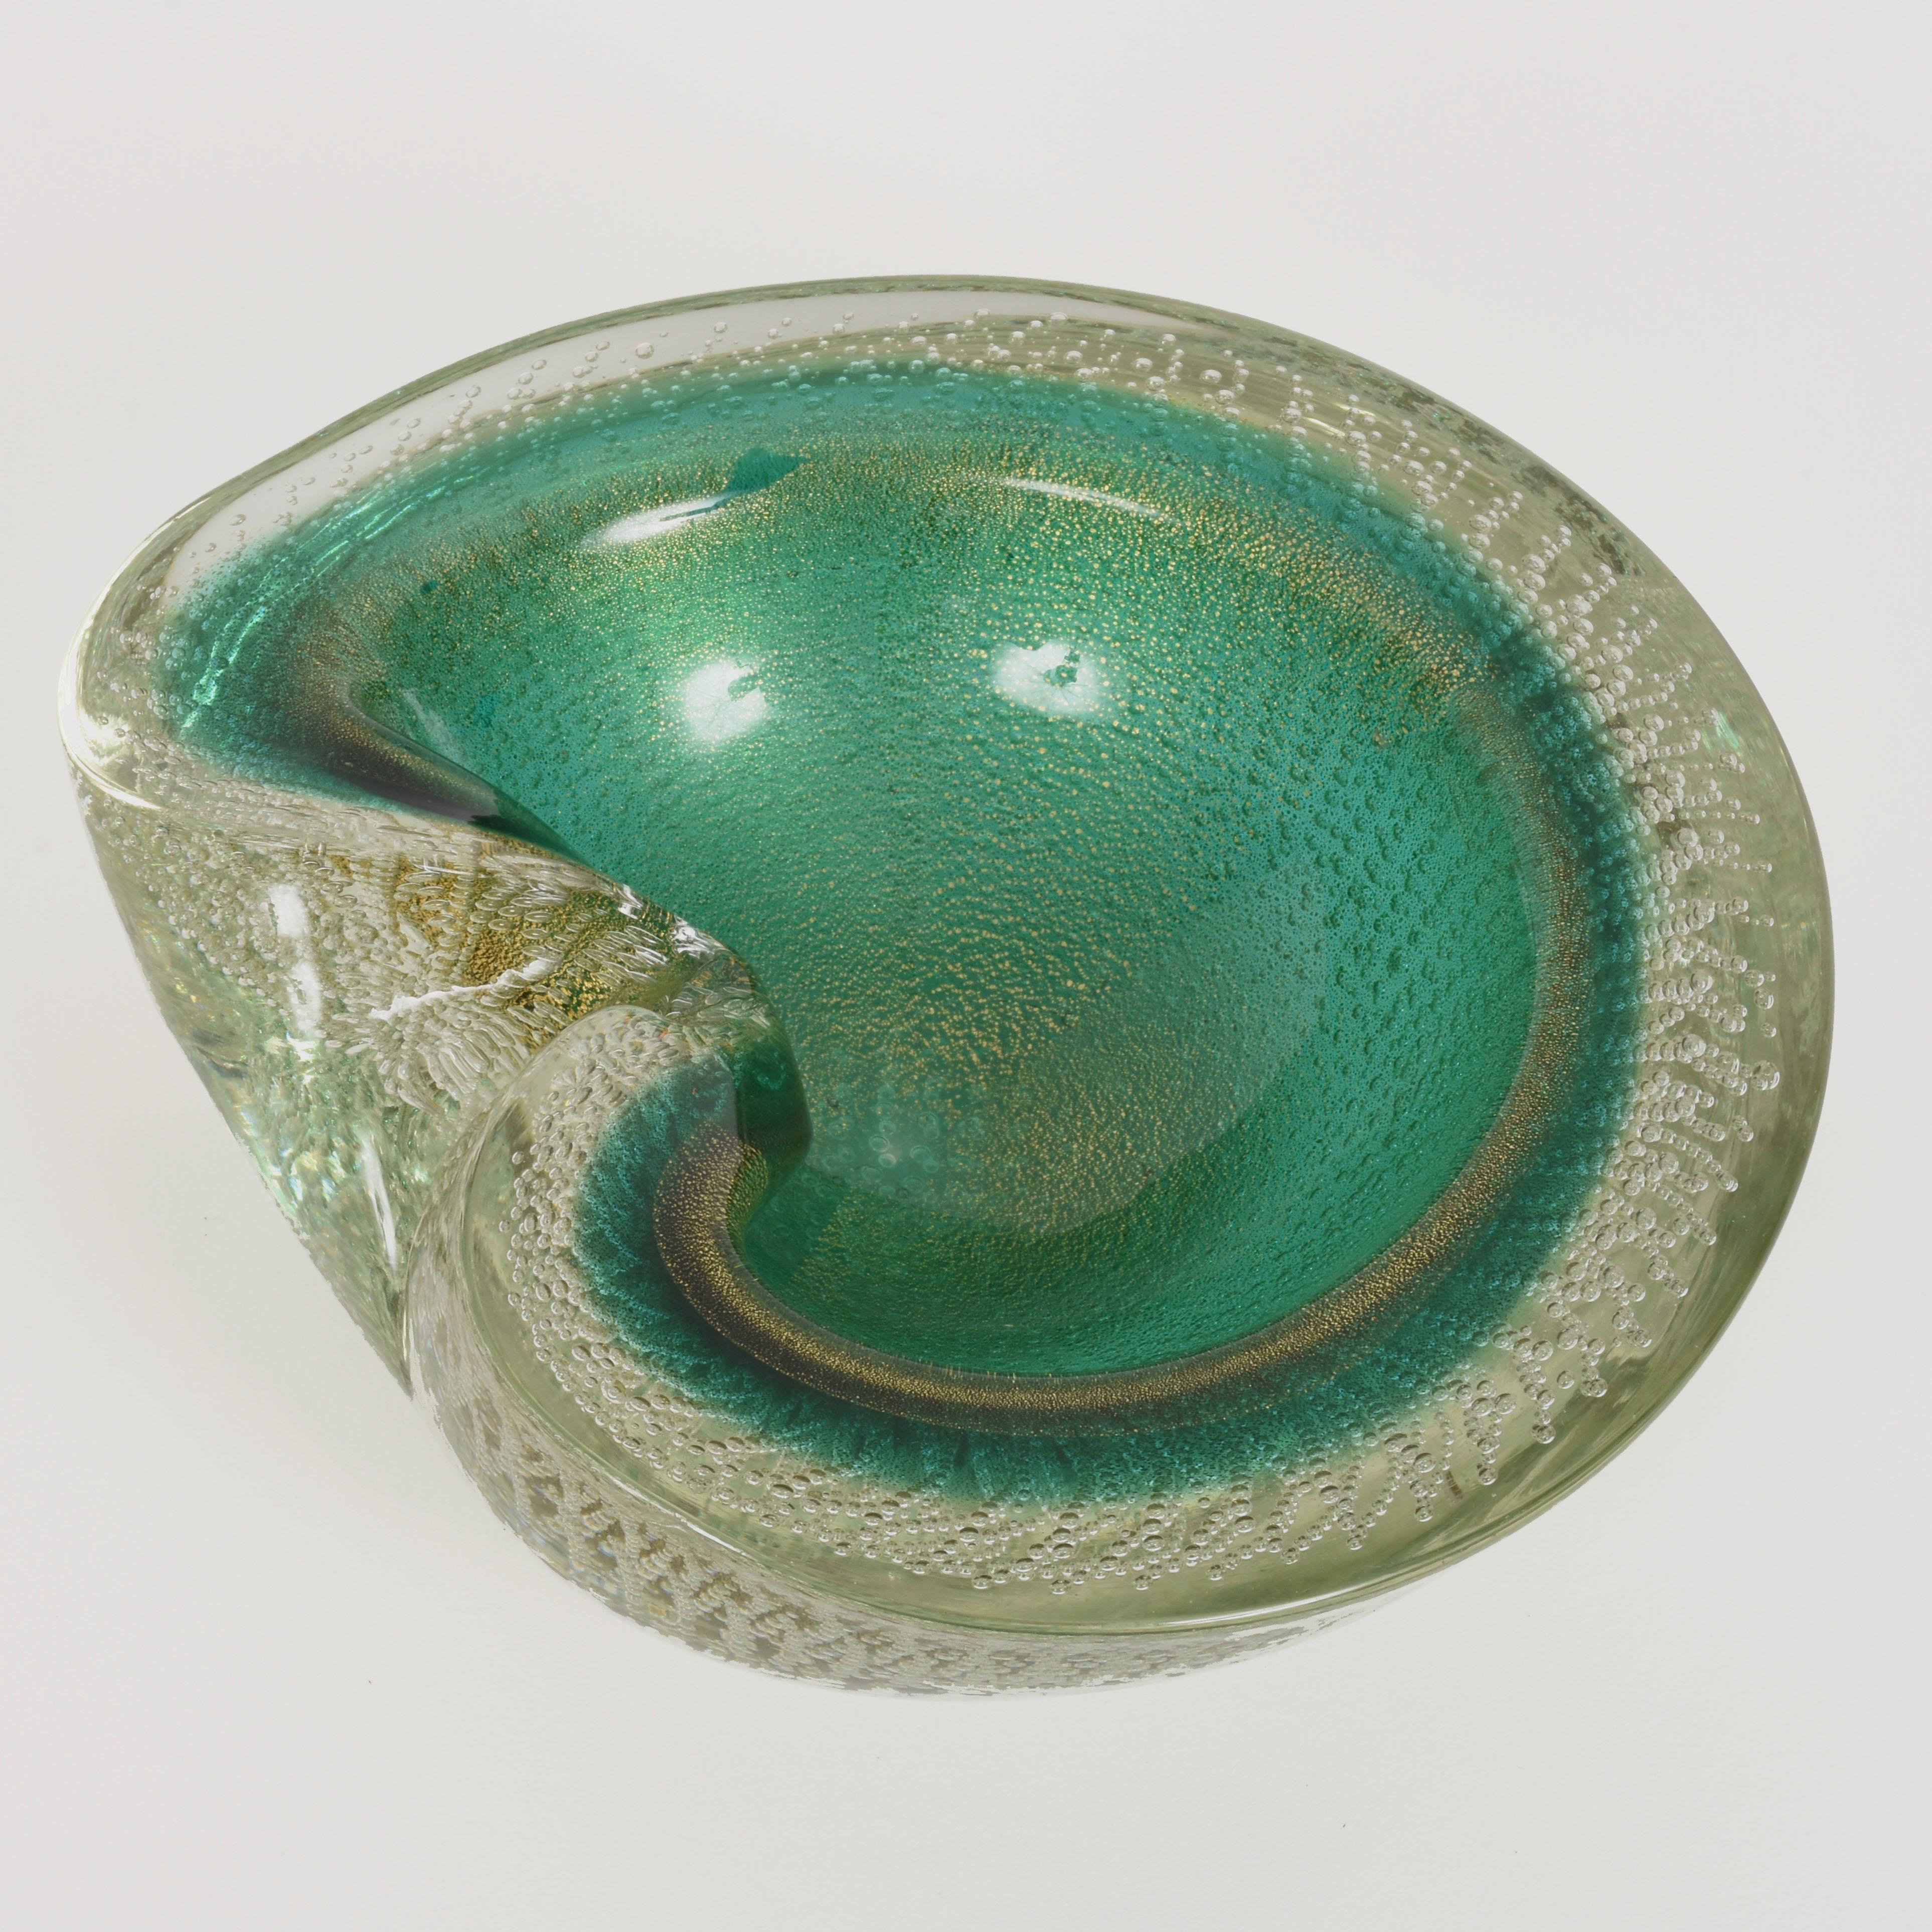 Wunderschöne Schale oder Aschenbecher aus grünem und goldenem Muranoglas aus der Mitte des Jahrhunderts. Dieser handgefertigte Artikel wurde 1960 in Italien hergestellt und wird Archimede Seguso zugeschrieben.

Dieses Stück ist einzigartig, da es